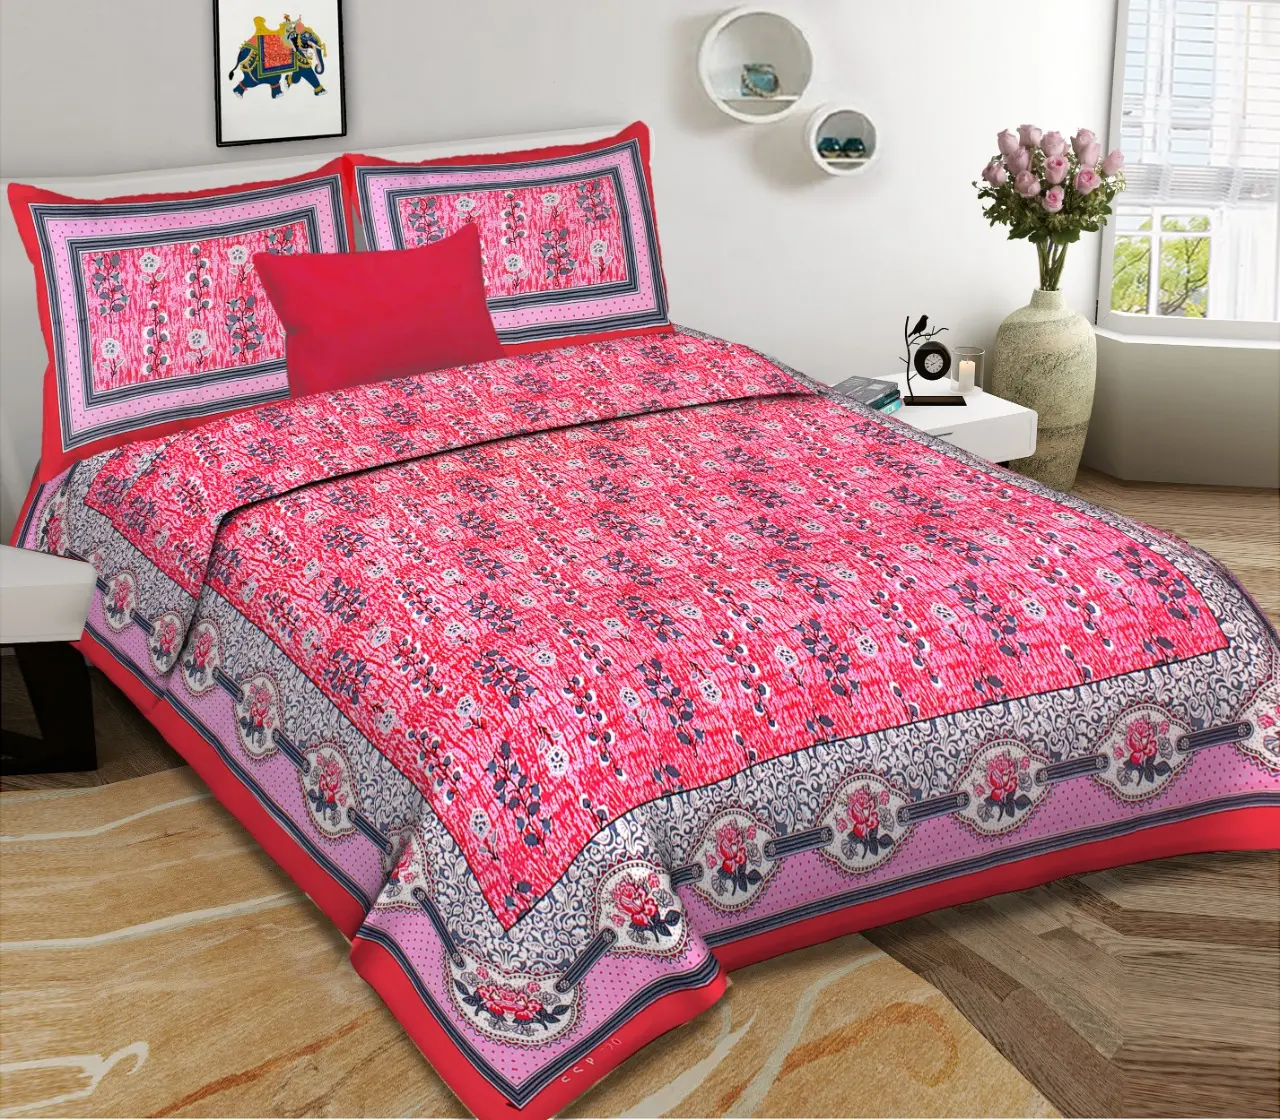 الهندي اليدوية 100% القطن راجاستان ملاءات مزدوجة طقم سرير 1 سرير مزدوج مع 2 وسادة تغطي